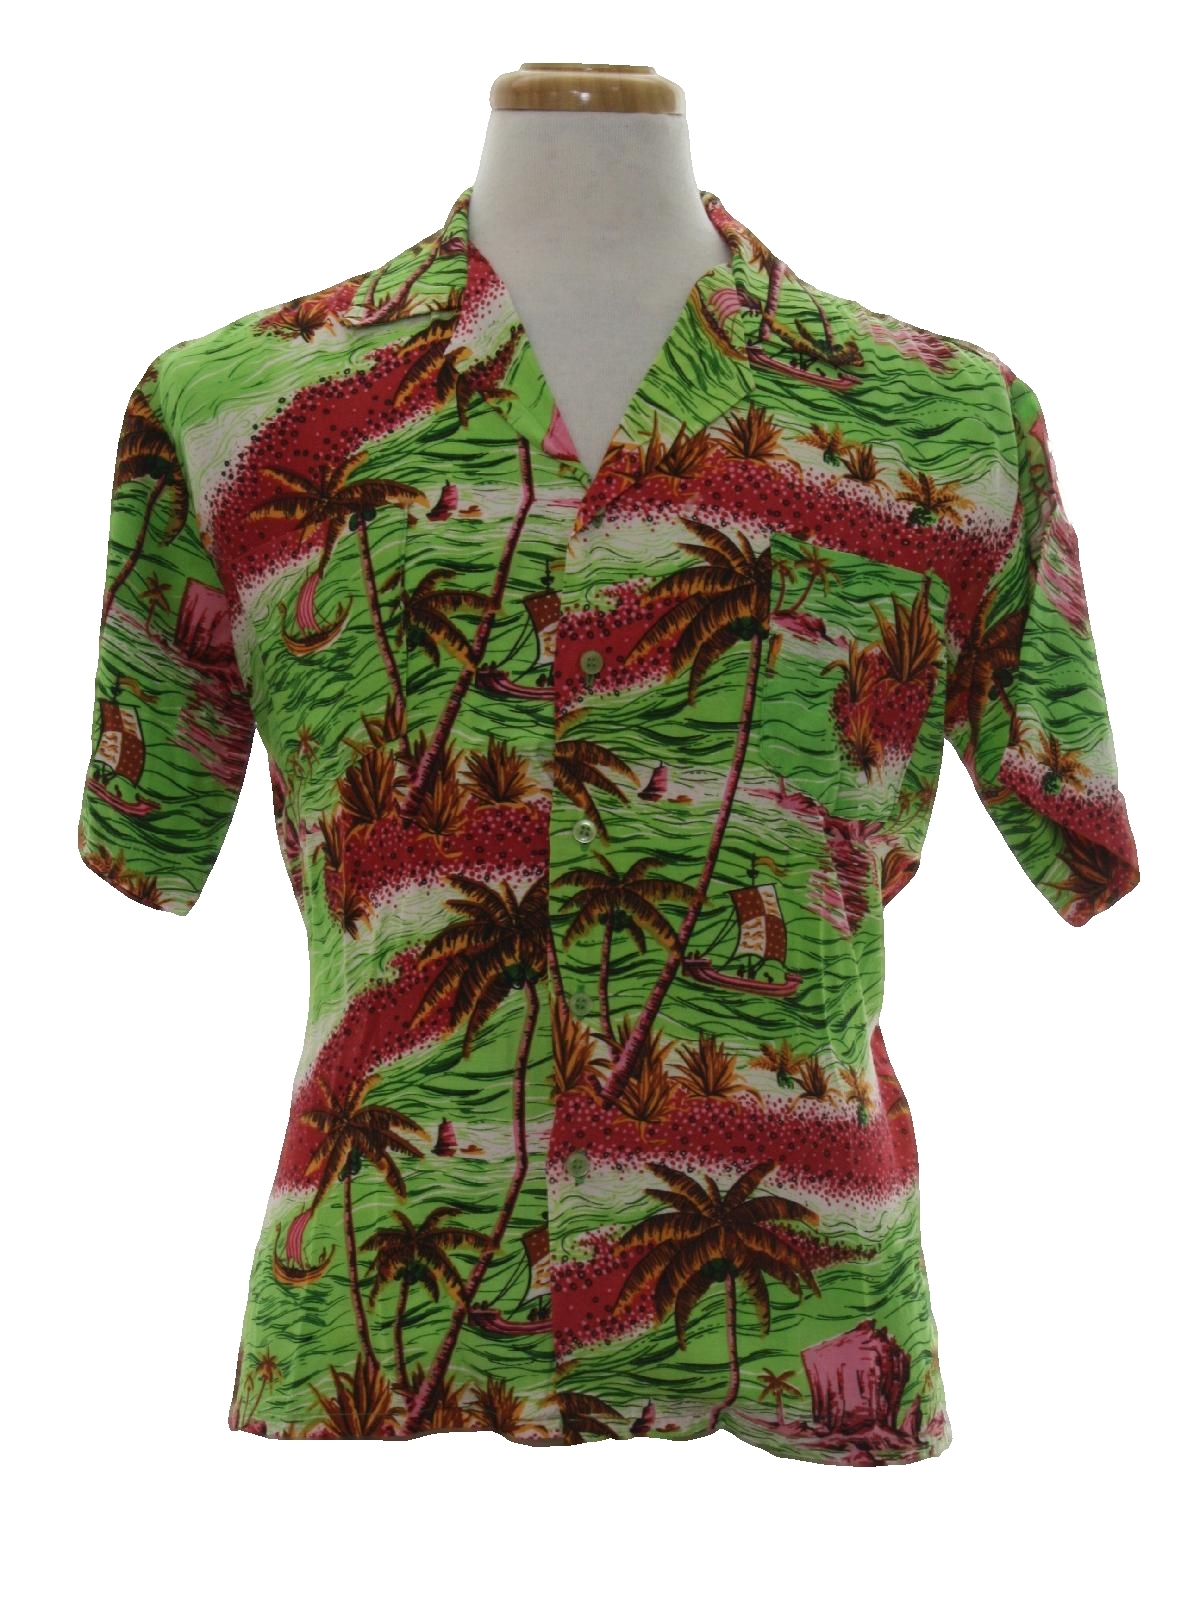 Retro 1970s Hawaiian Shirt: Late 70s or early 80s -Bandolero- Mens acid ...